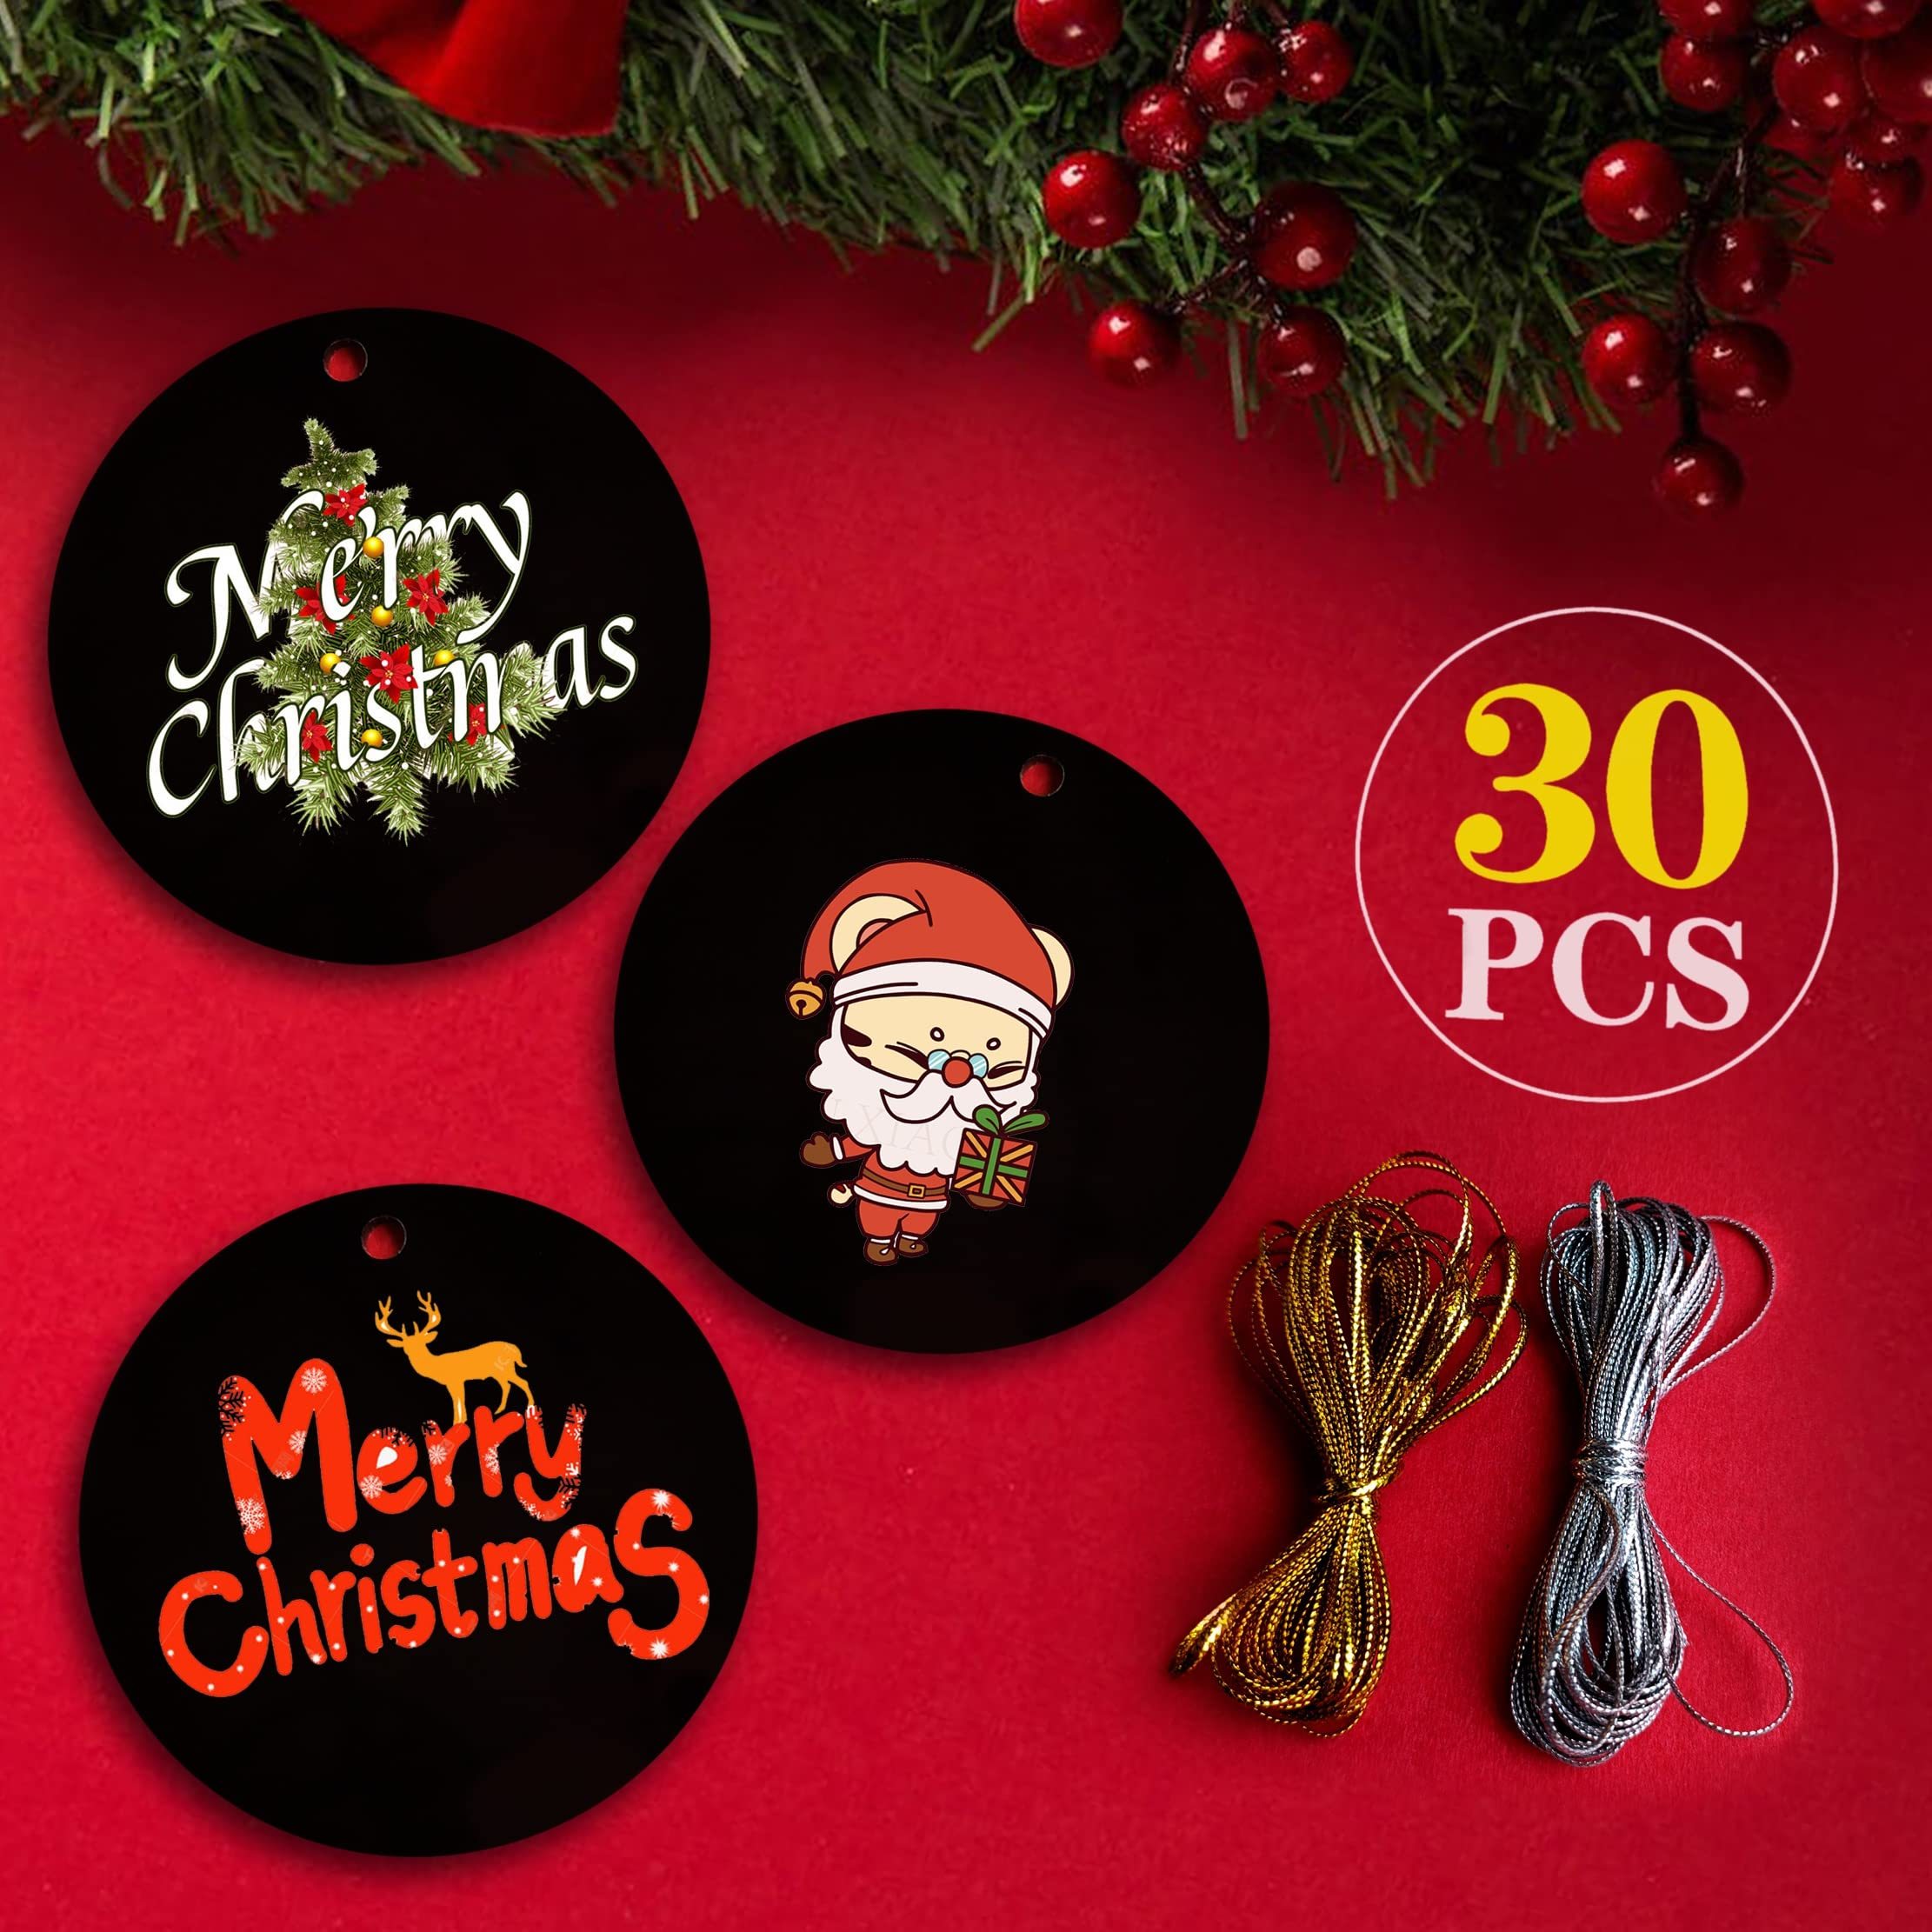 30 Pcs Clear Round Acrylic Ornaments, Clear Acrylic Christmas